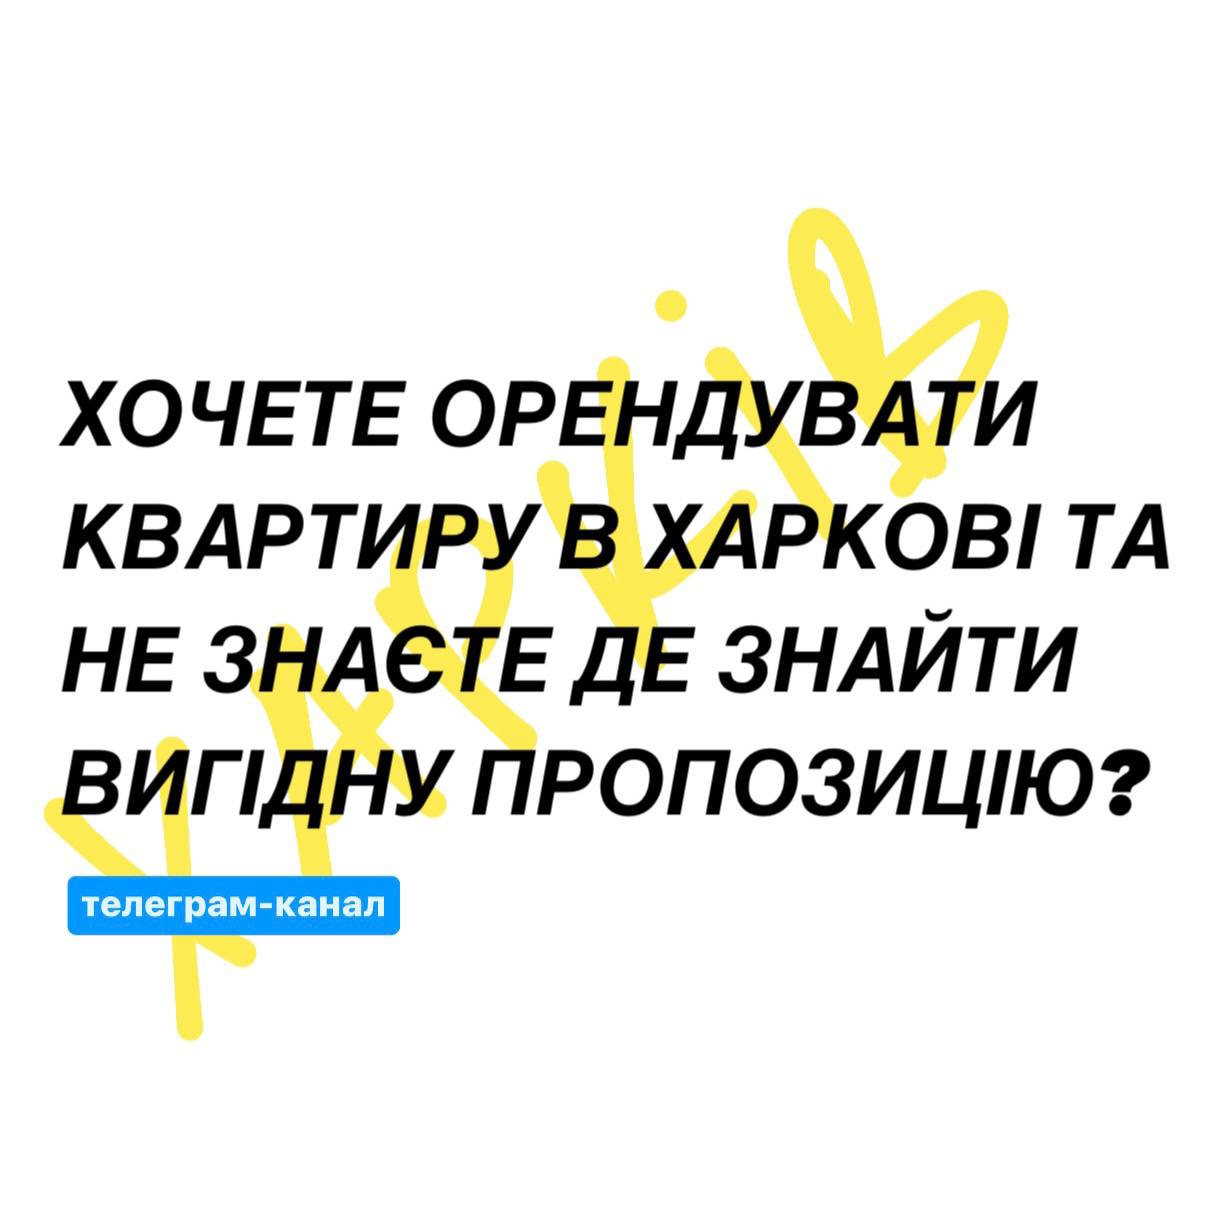 Труха телеграмм украина на русском языке смотреть онлайн бесплатно фото 41